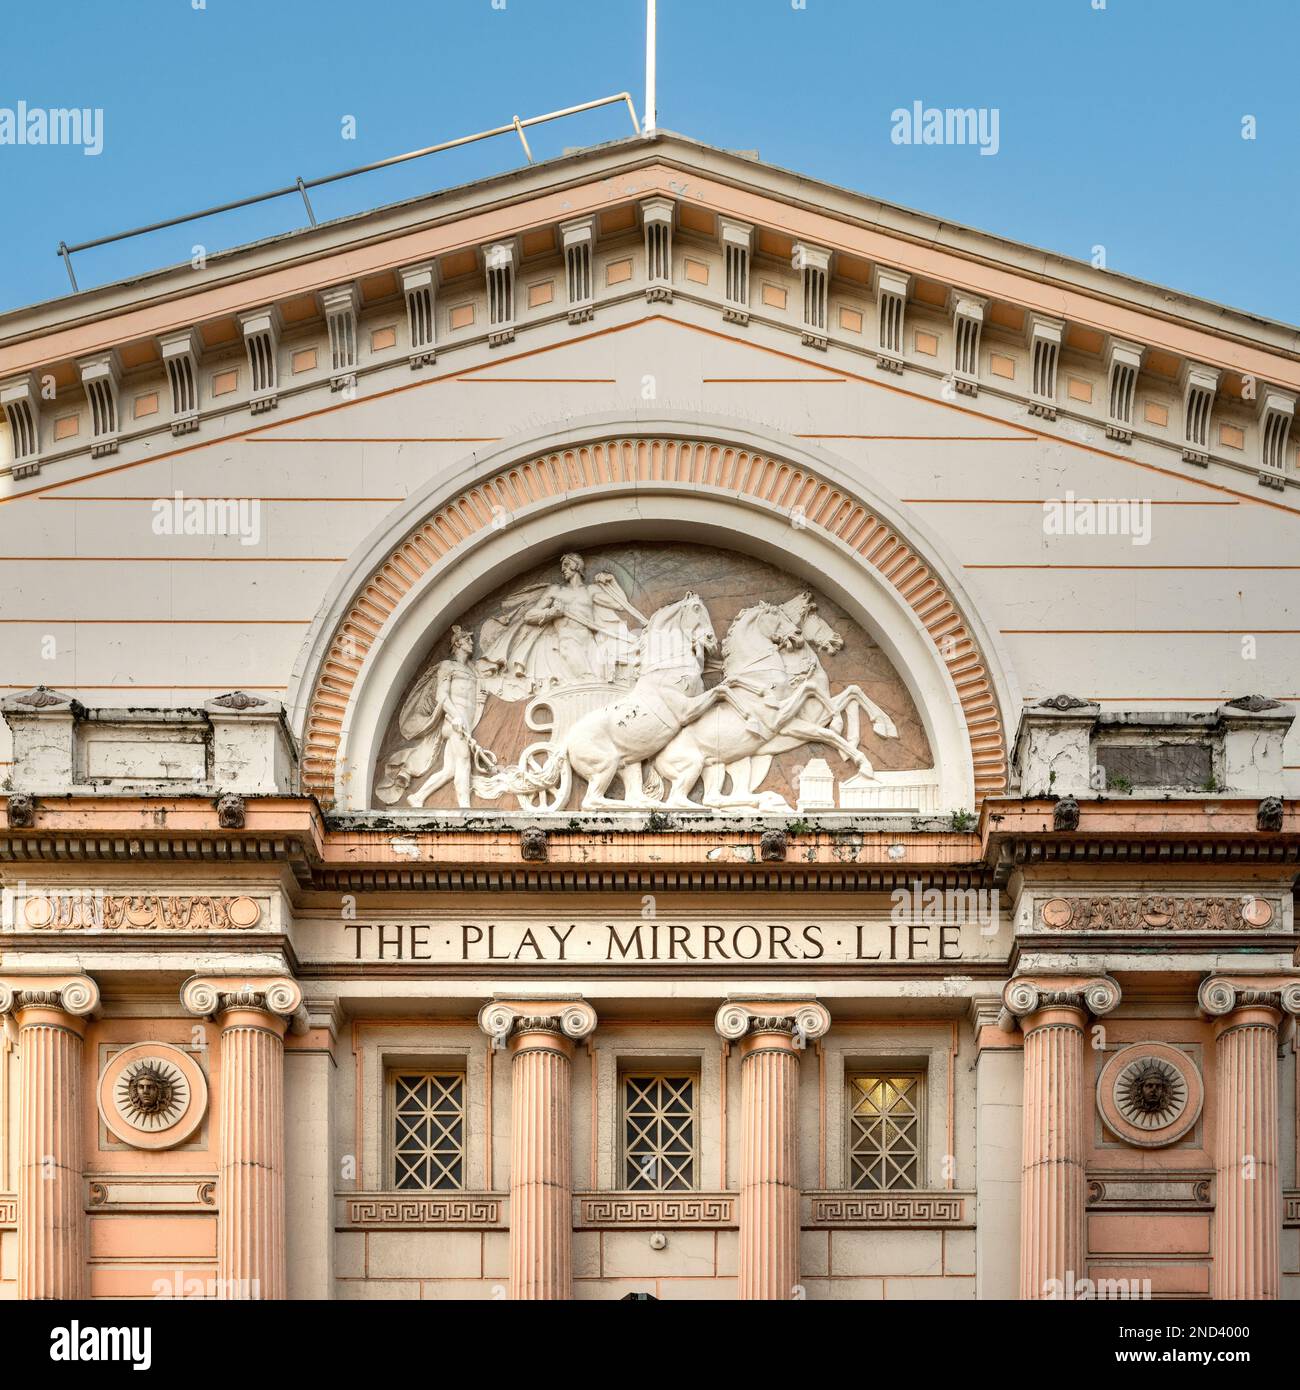 La maison de l'Opéra de Manchester entablature avec la frise a écrit "THE PLAY MIRRORS LIFE". Banque D'Images